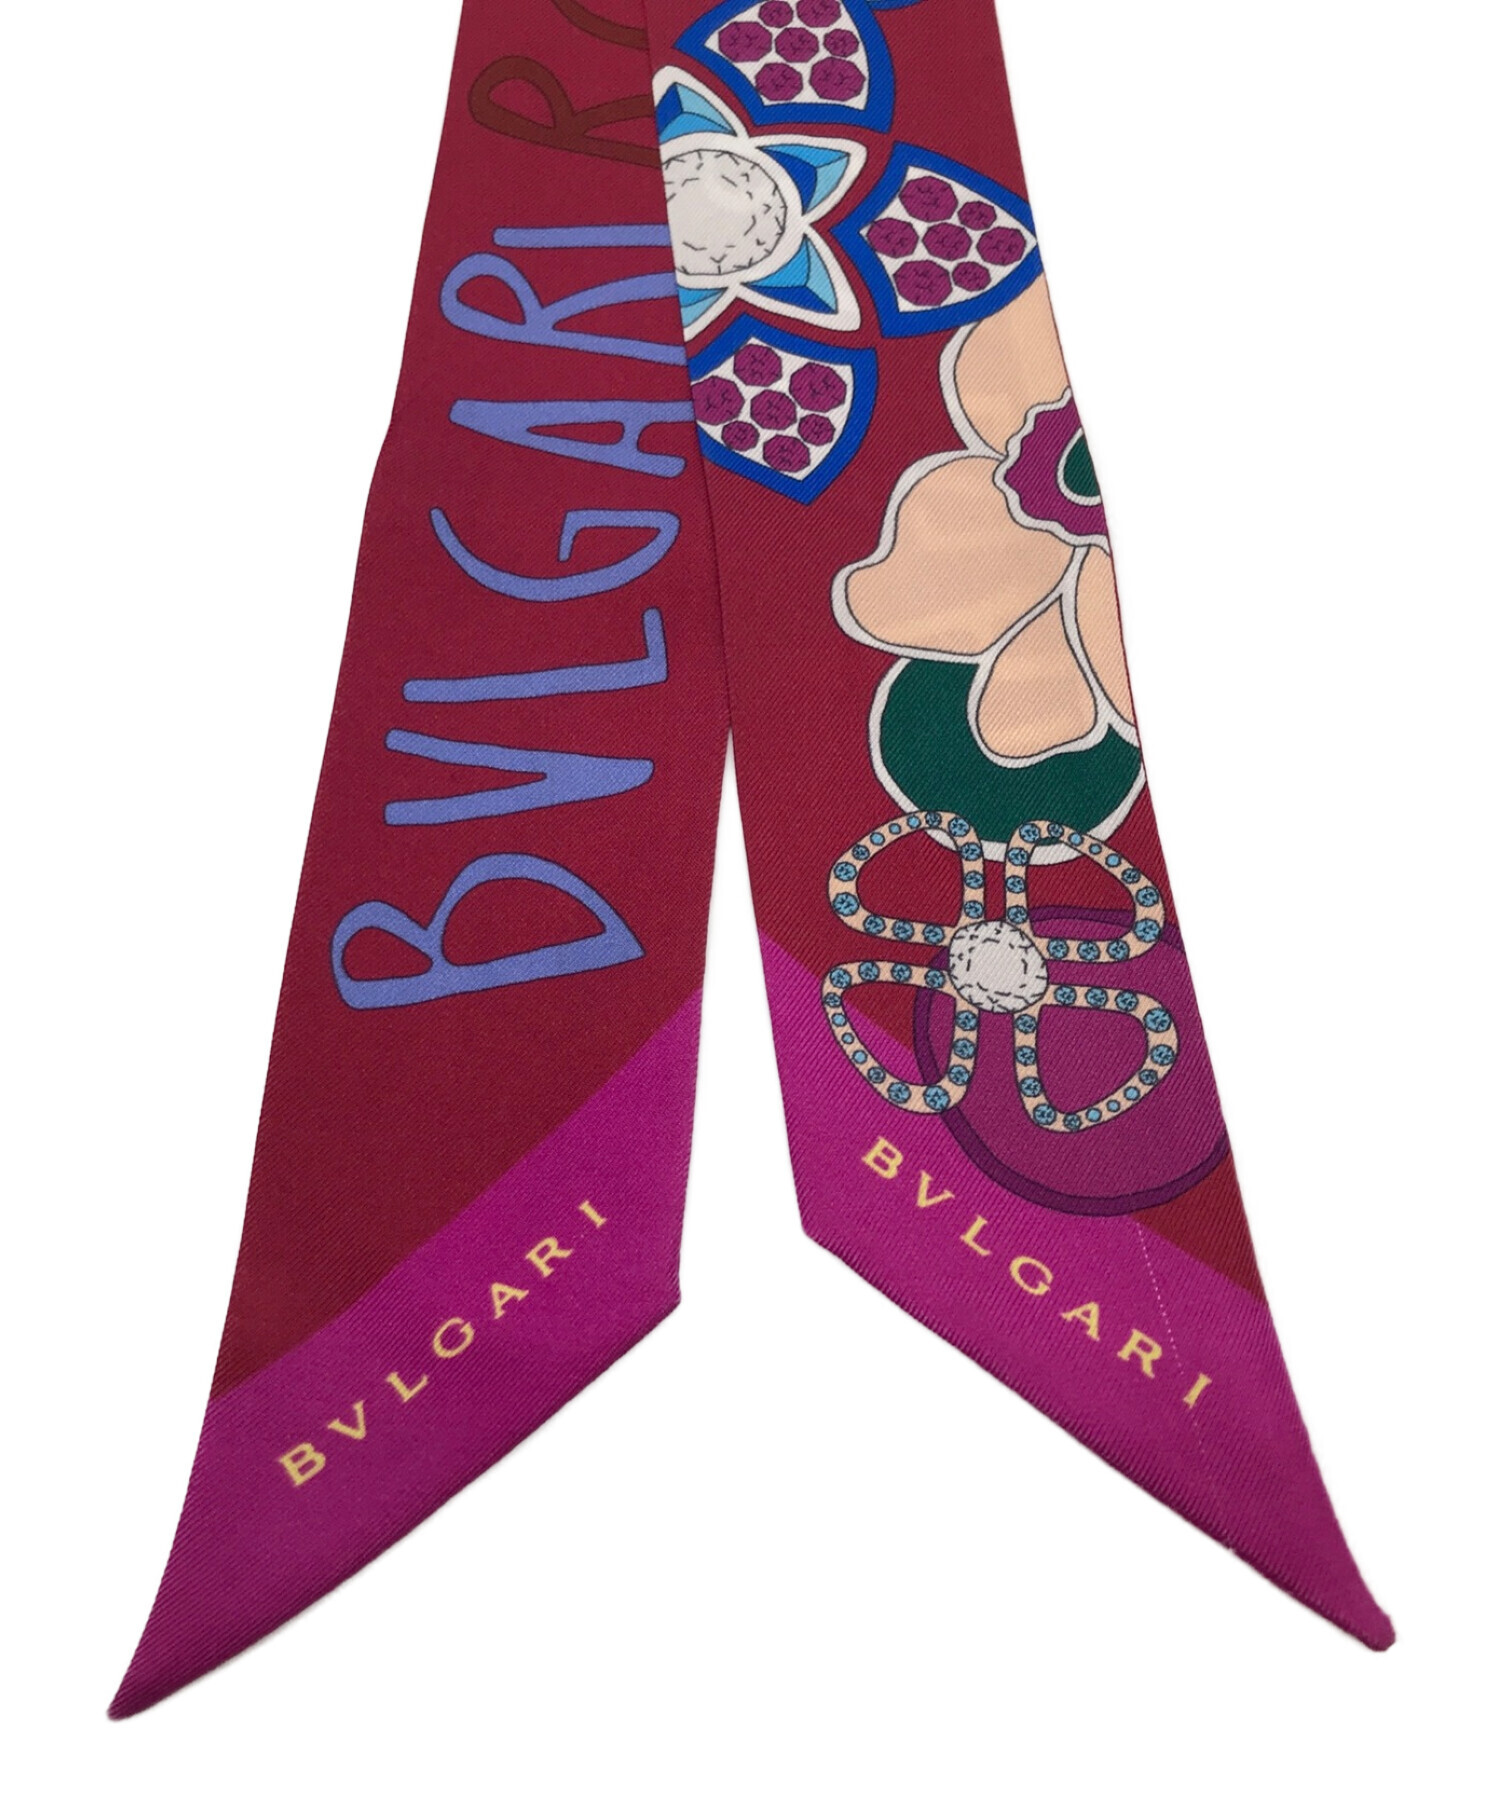 BVLGARI (ブルガリ) スカーフ パープル